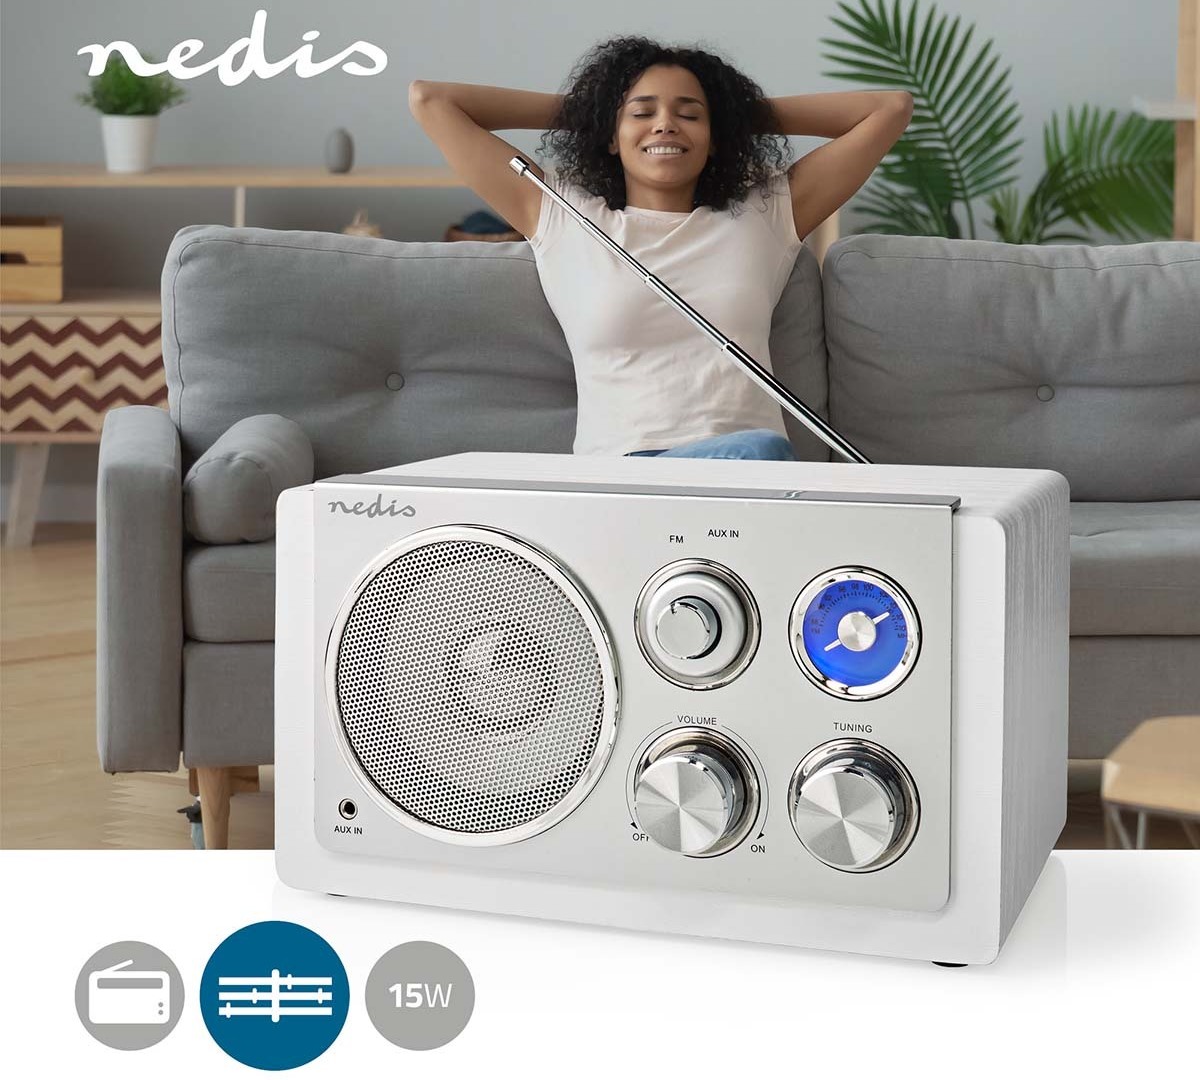 Designový FM radiopřijímač Nedis RDFM5110WT zapadne do jakéhokoliv interiéru bez ohledu na konceptuální styl daného prostoru.